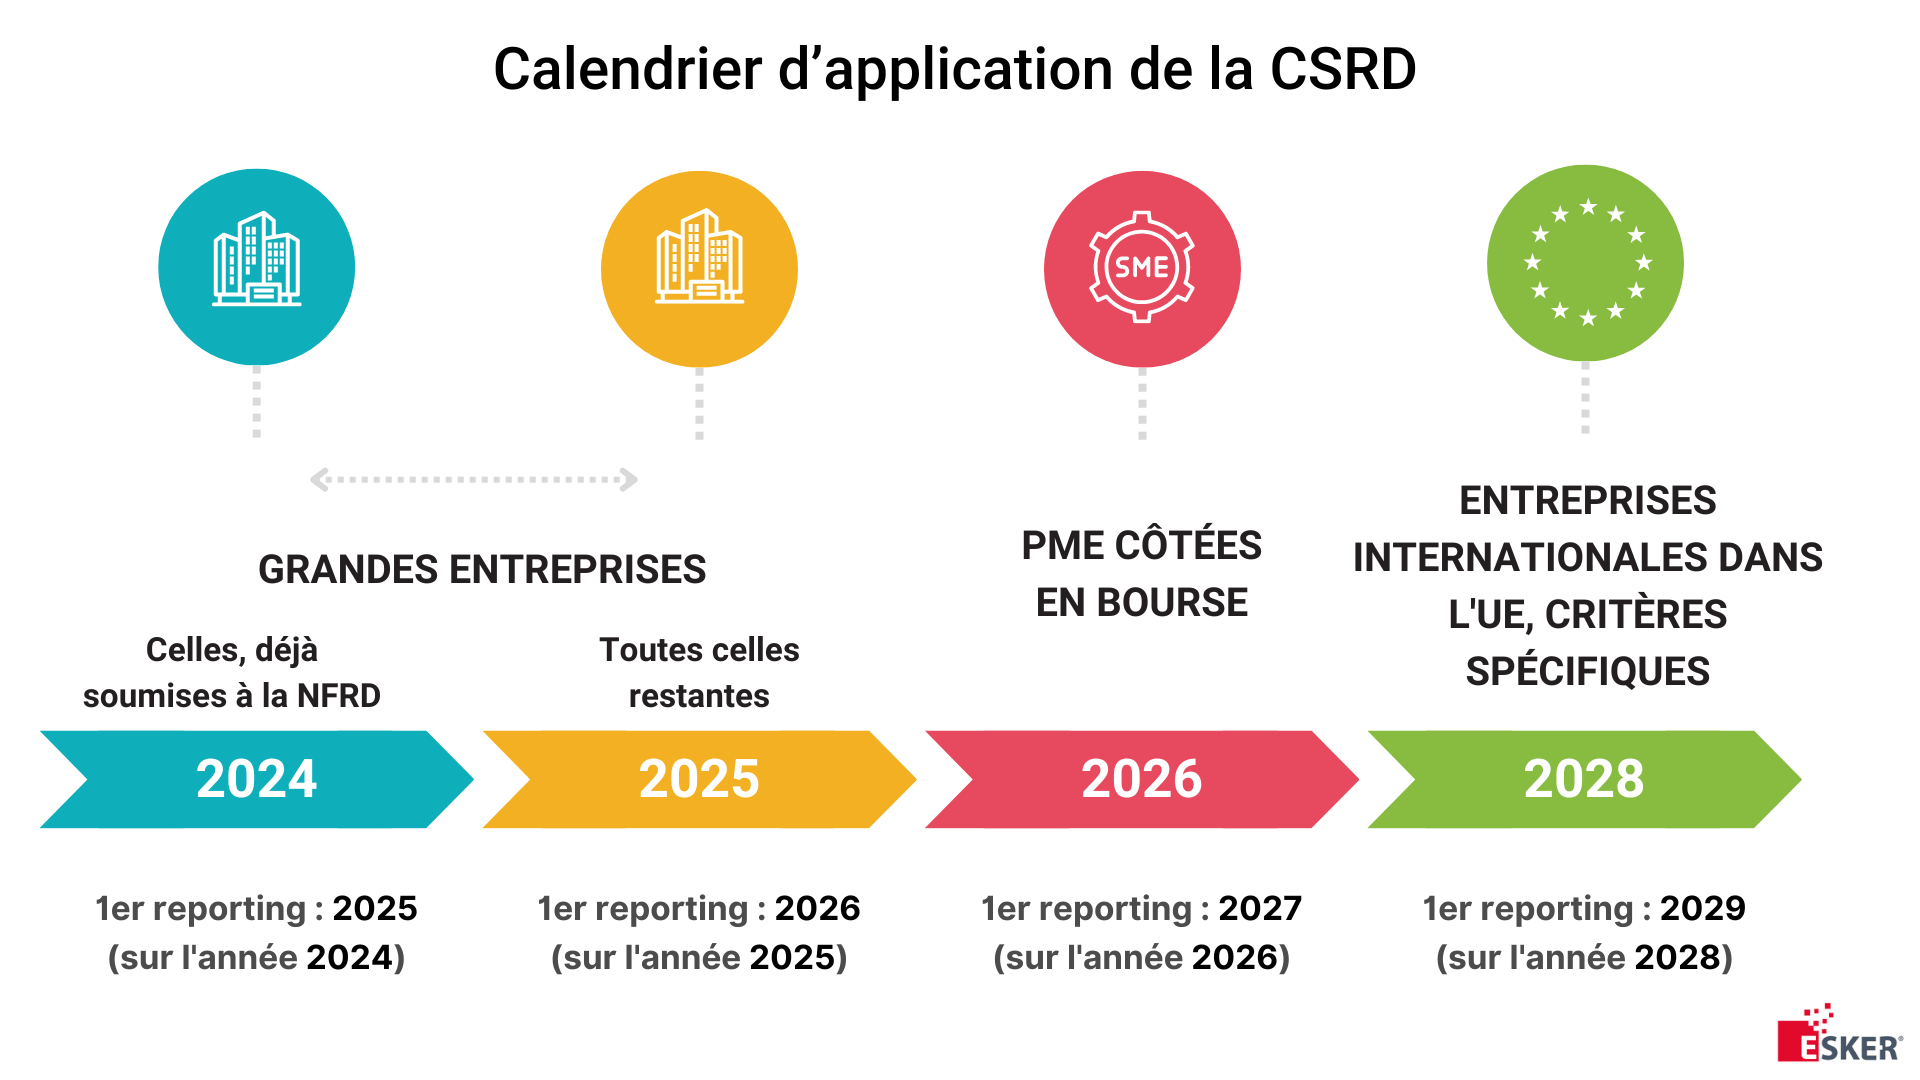 Calendrier d'application de la CSRD